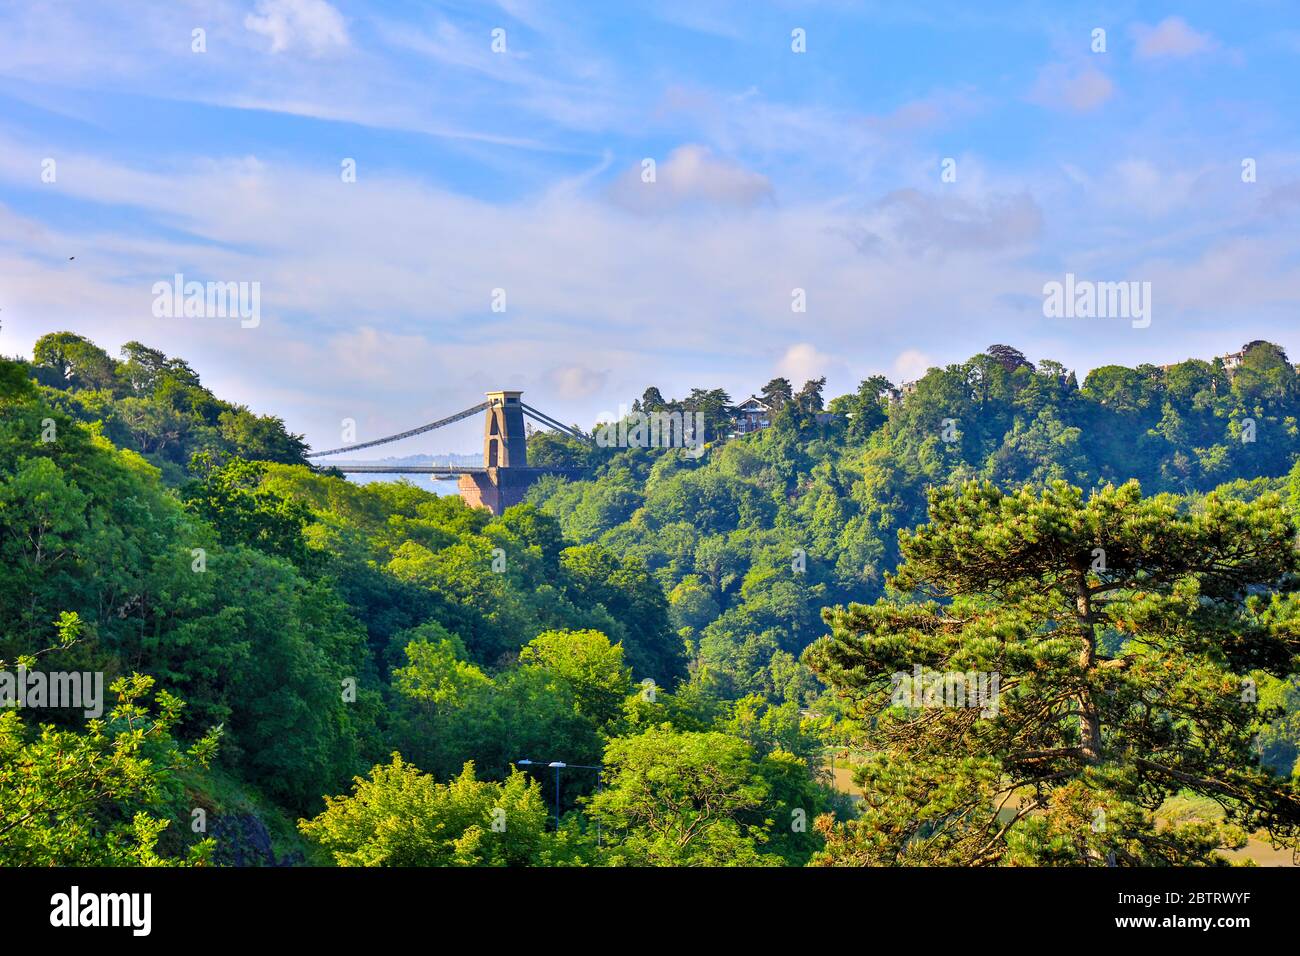 The Avon Gorge with the Clifton Suspension Bridge, Bristol, England Stock Photo